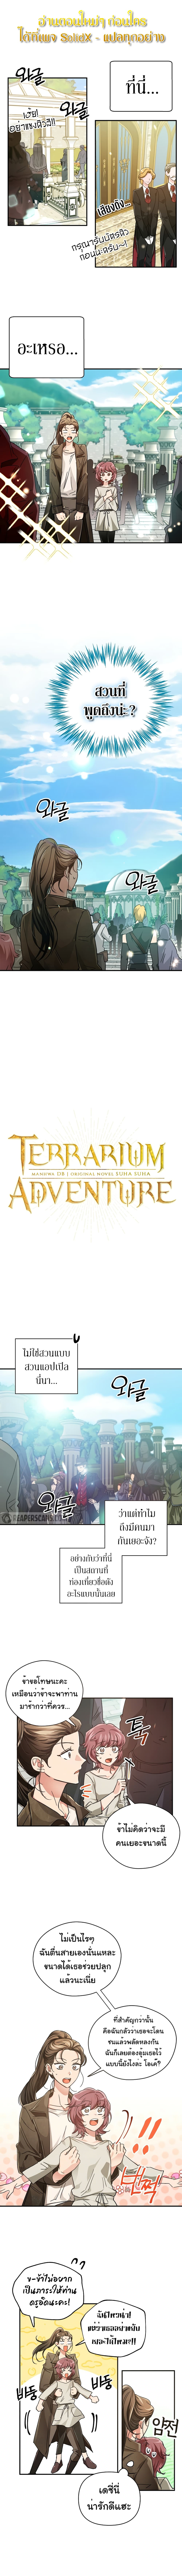 Terrarium Adventure 5 02